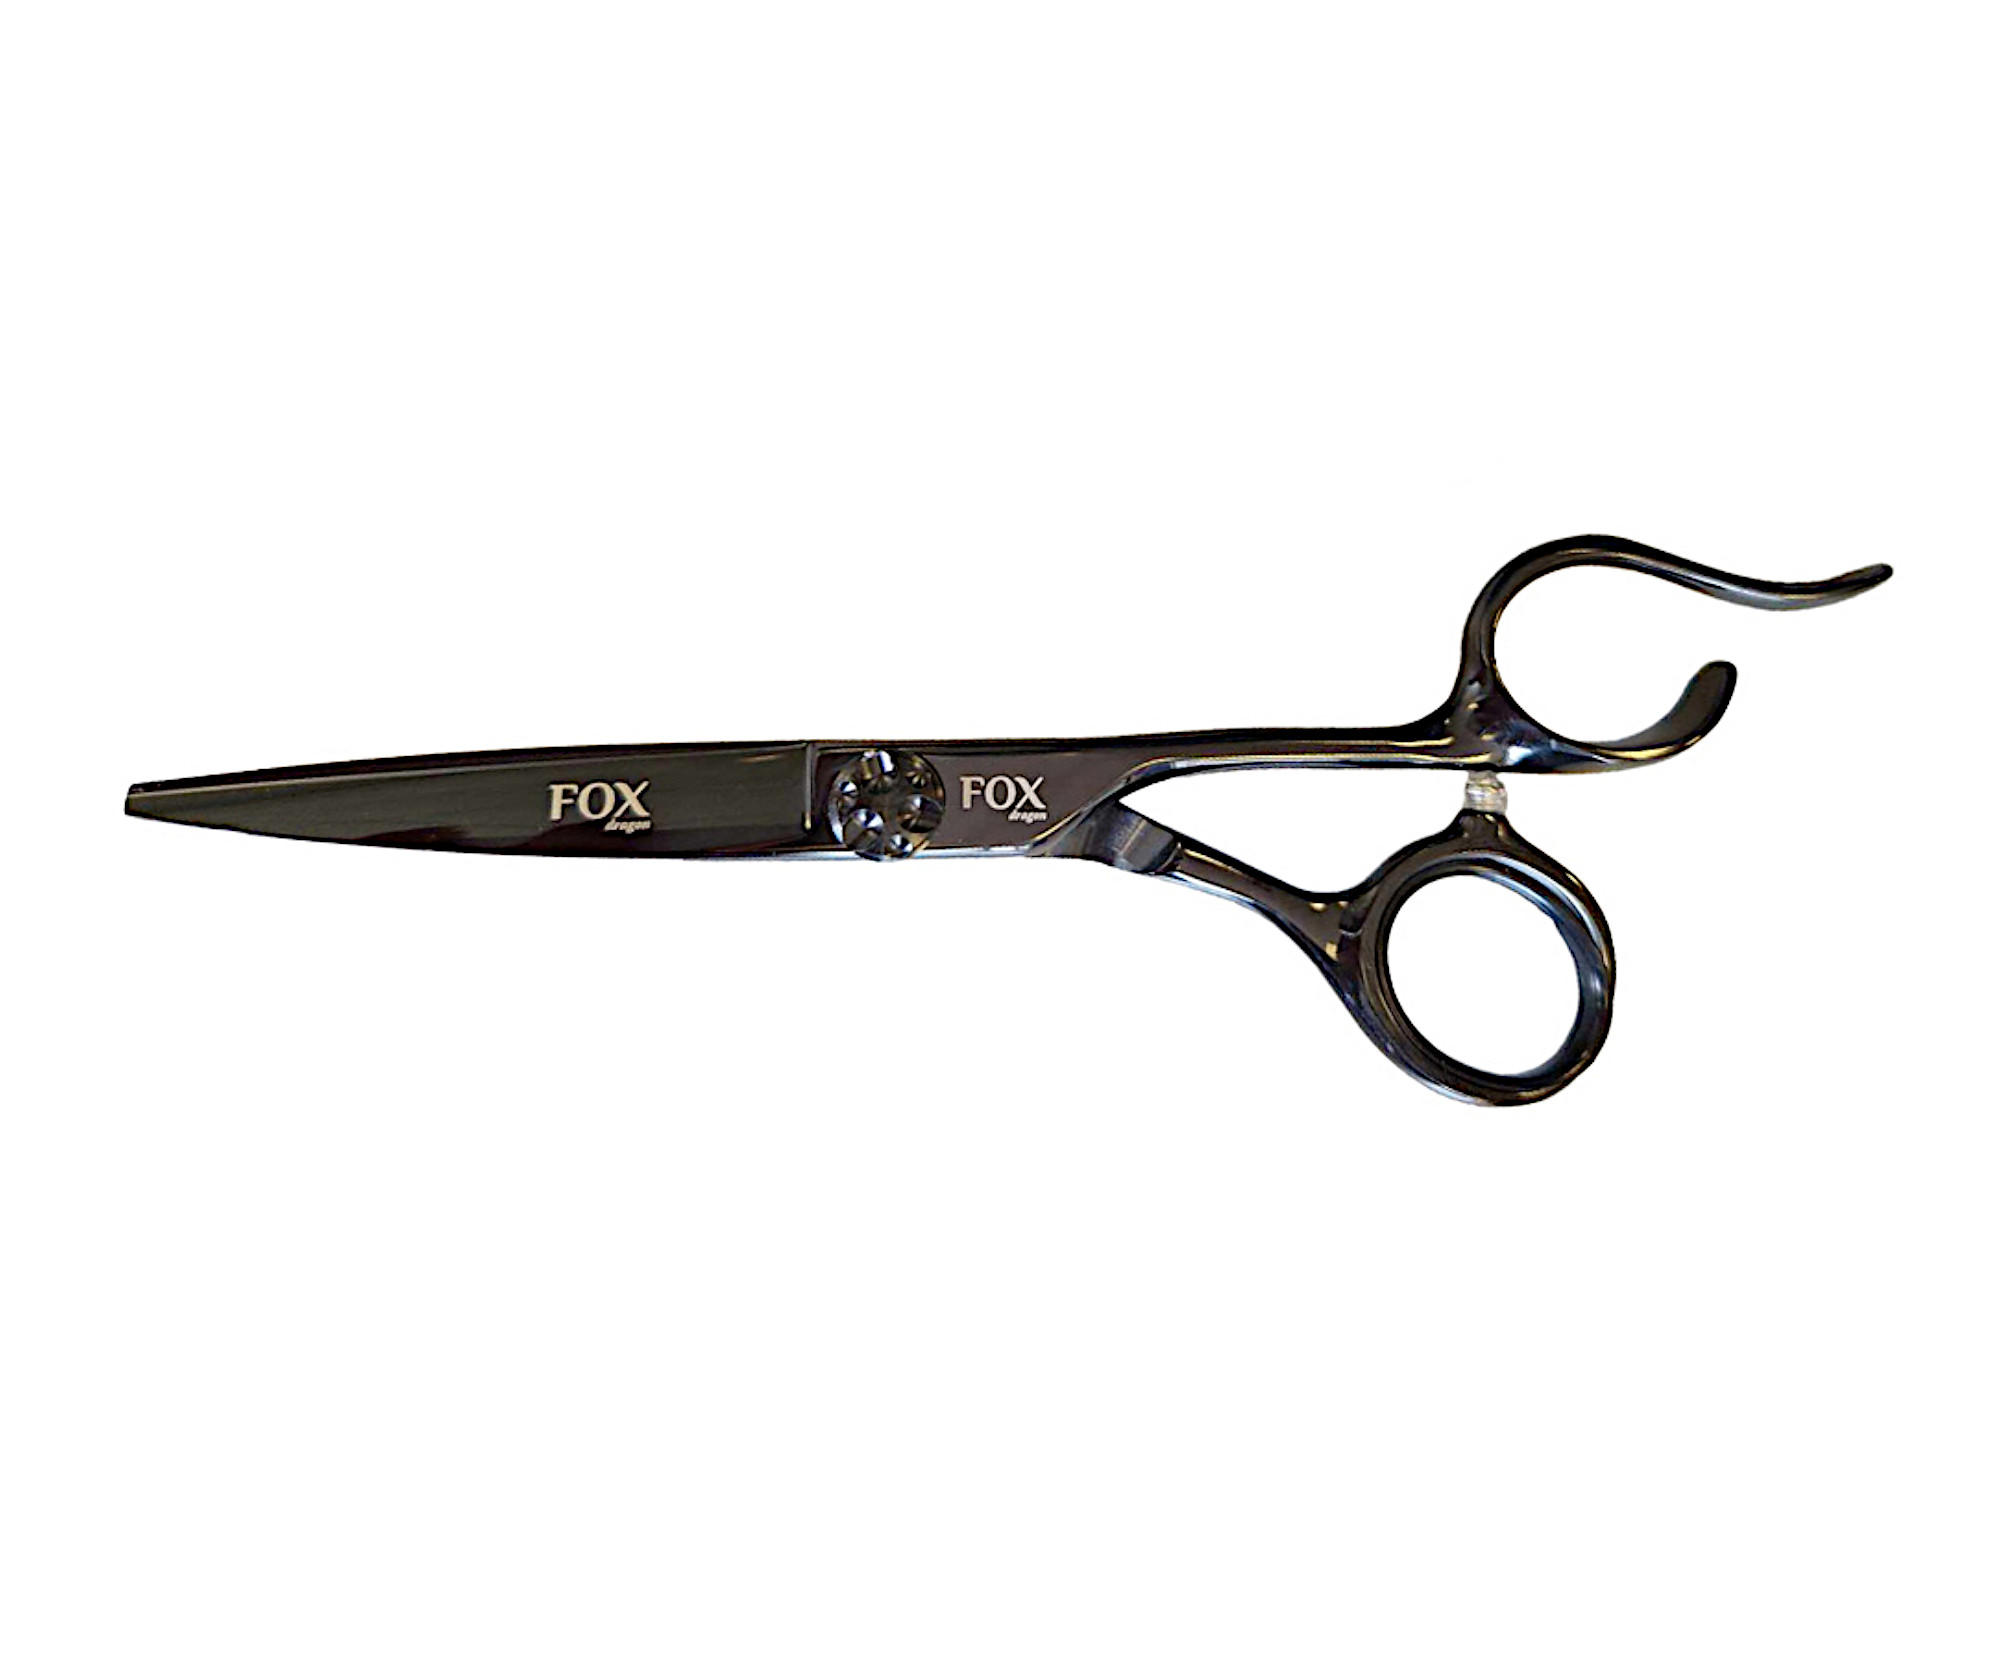 Kadeřnické nůžky Fox Dragon 5,5" - černé (1509565) + dárek zdarma